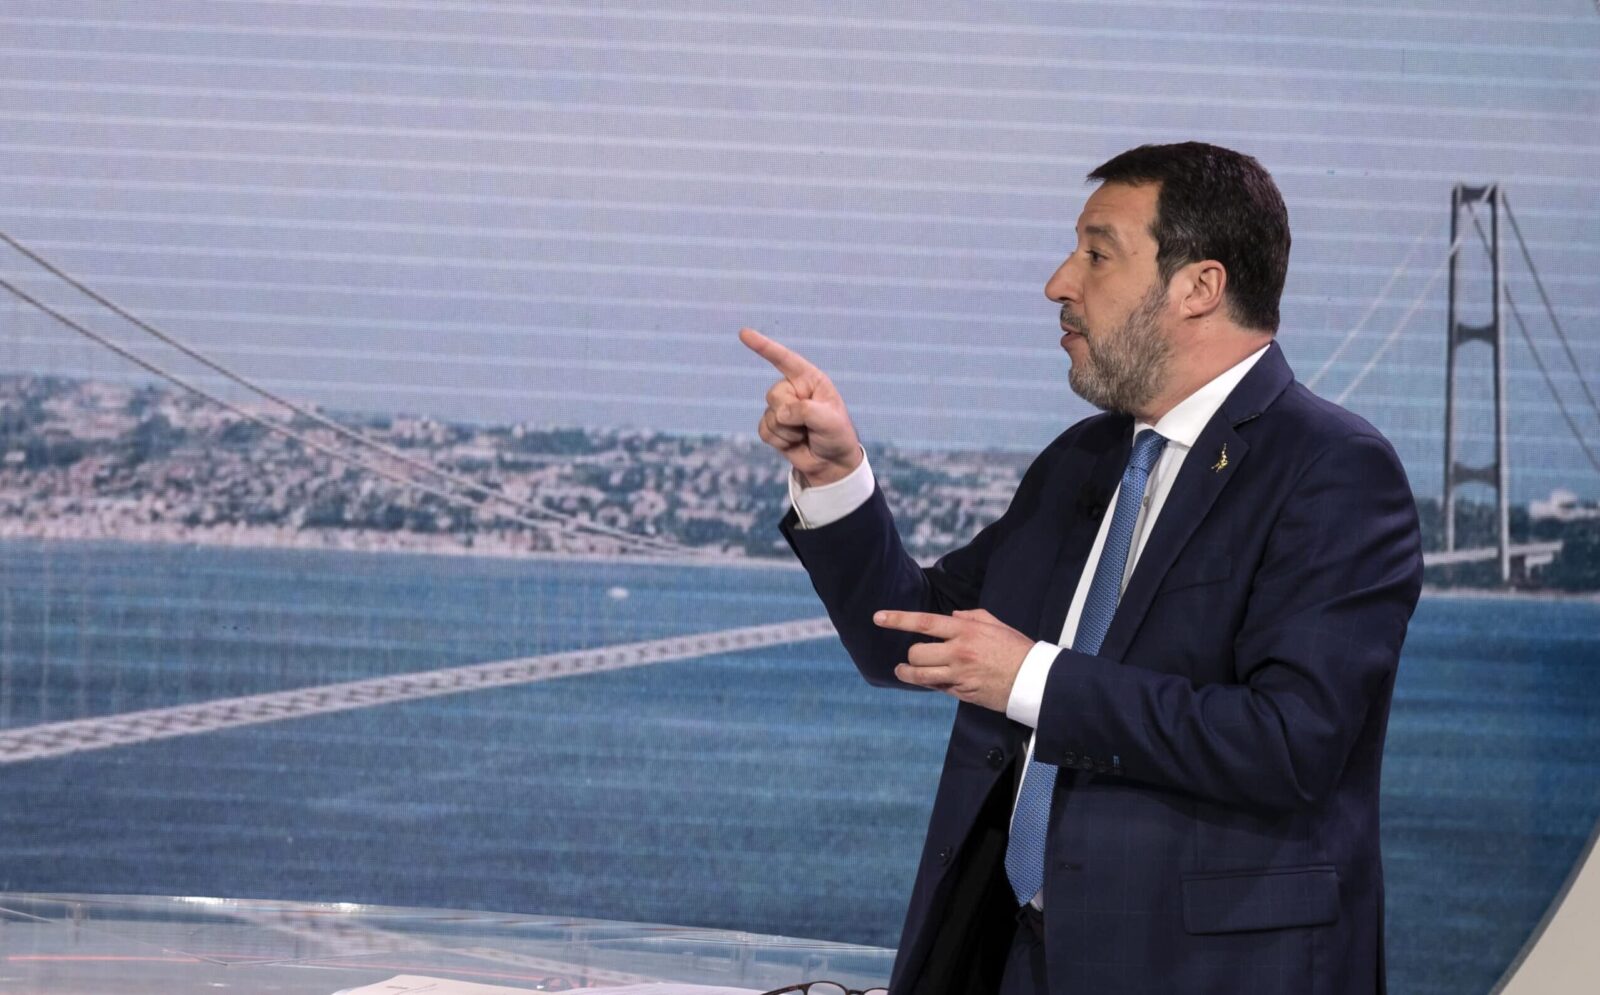 Ponte sullo Stretto, dopo la puntata di Report Pd e Avs chiedono a Salvini di riferire in Parlamento